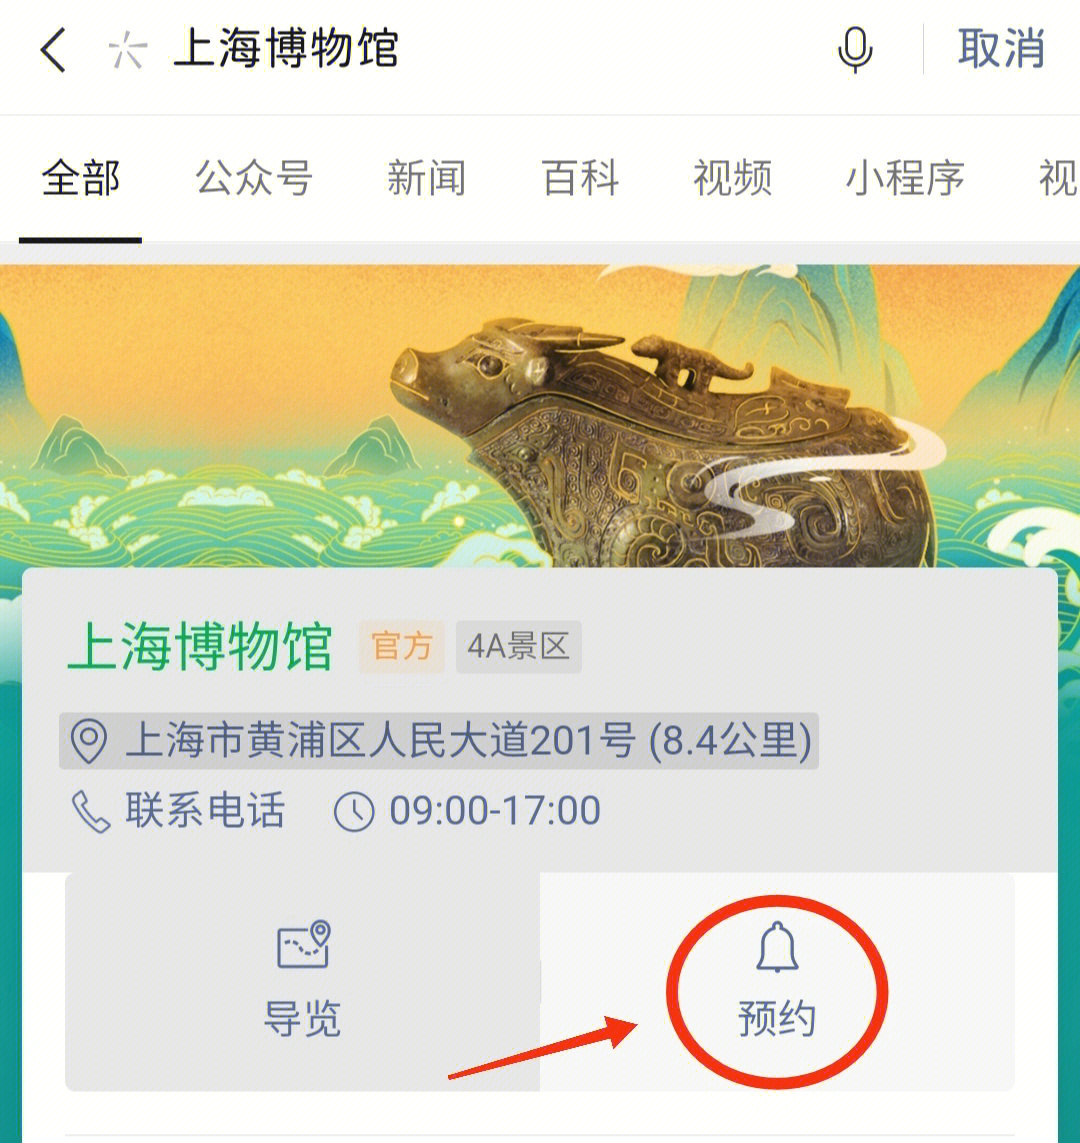 关于门票:微信搜索93上海博物馆→点击:预约→查询时间段(9:00